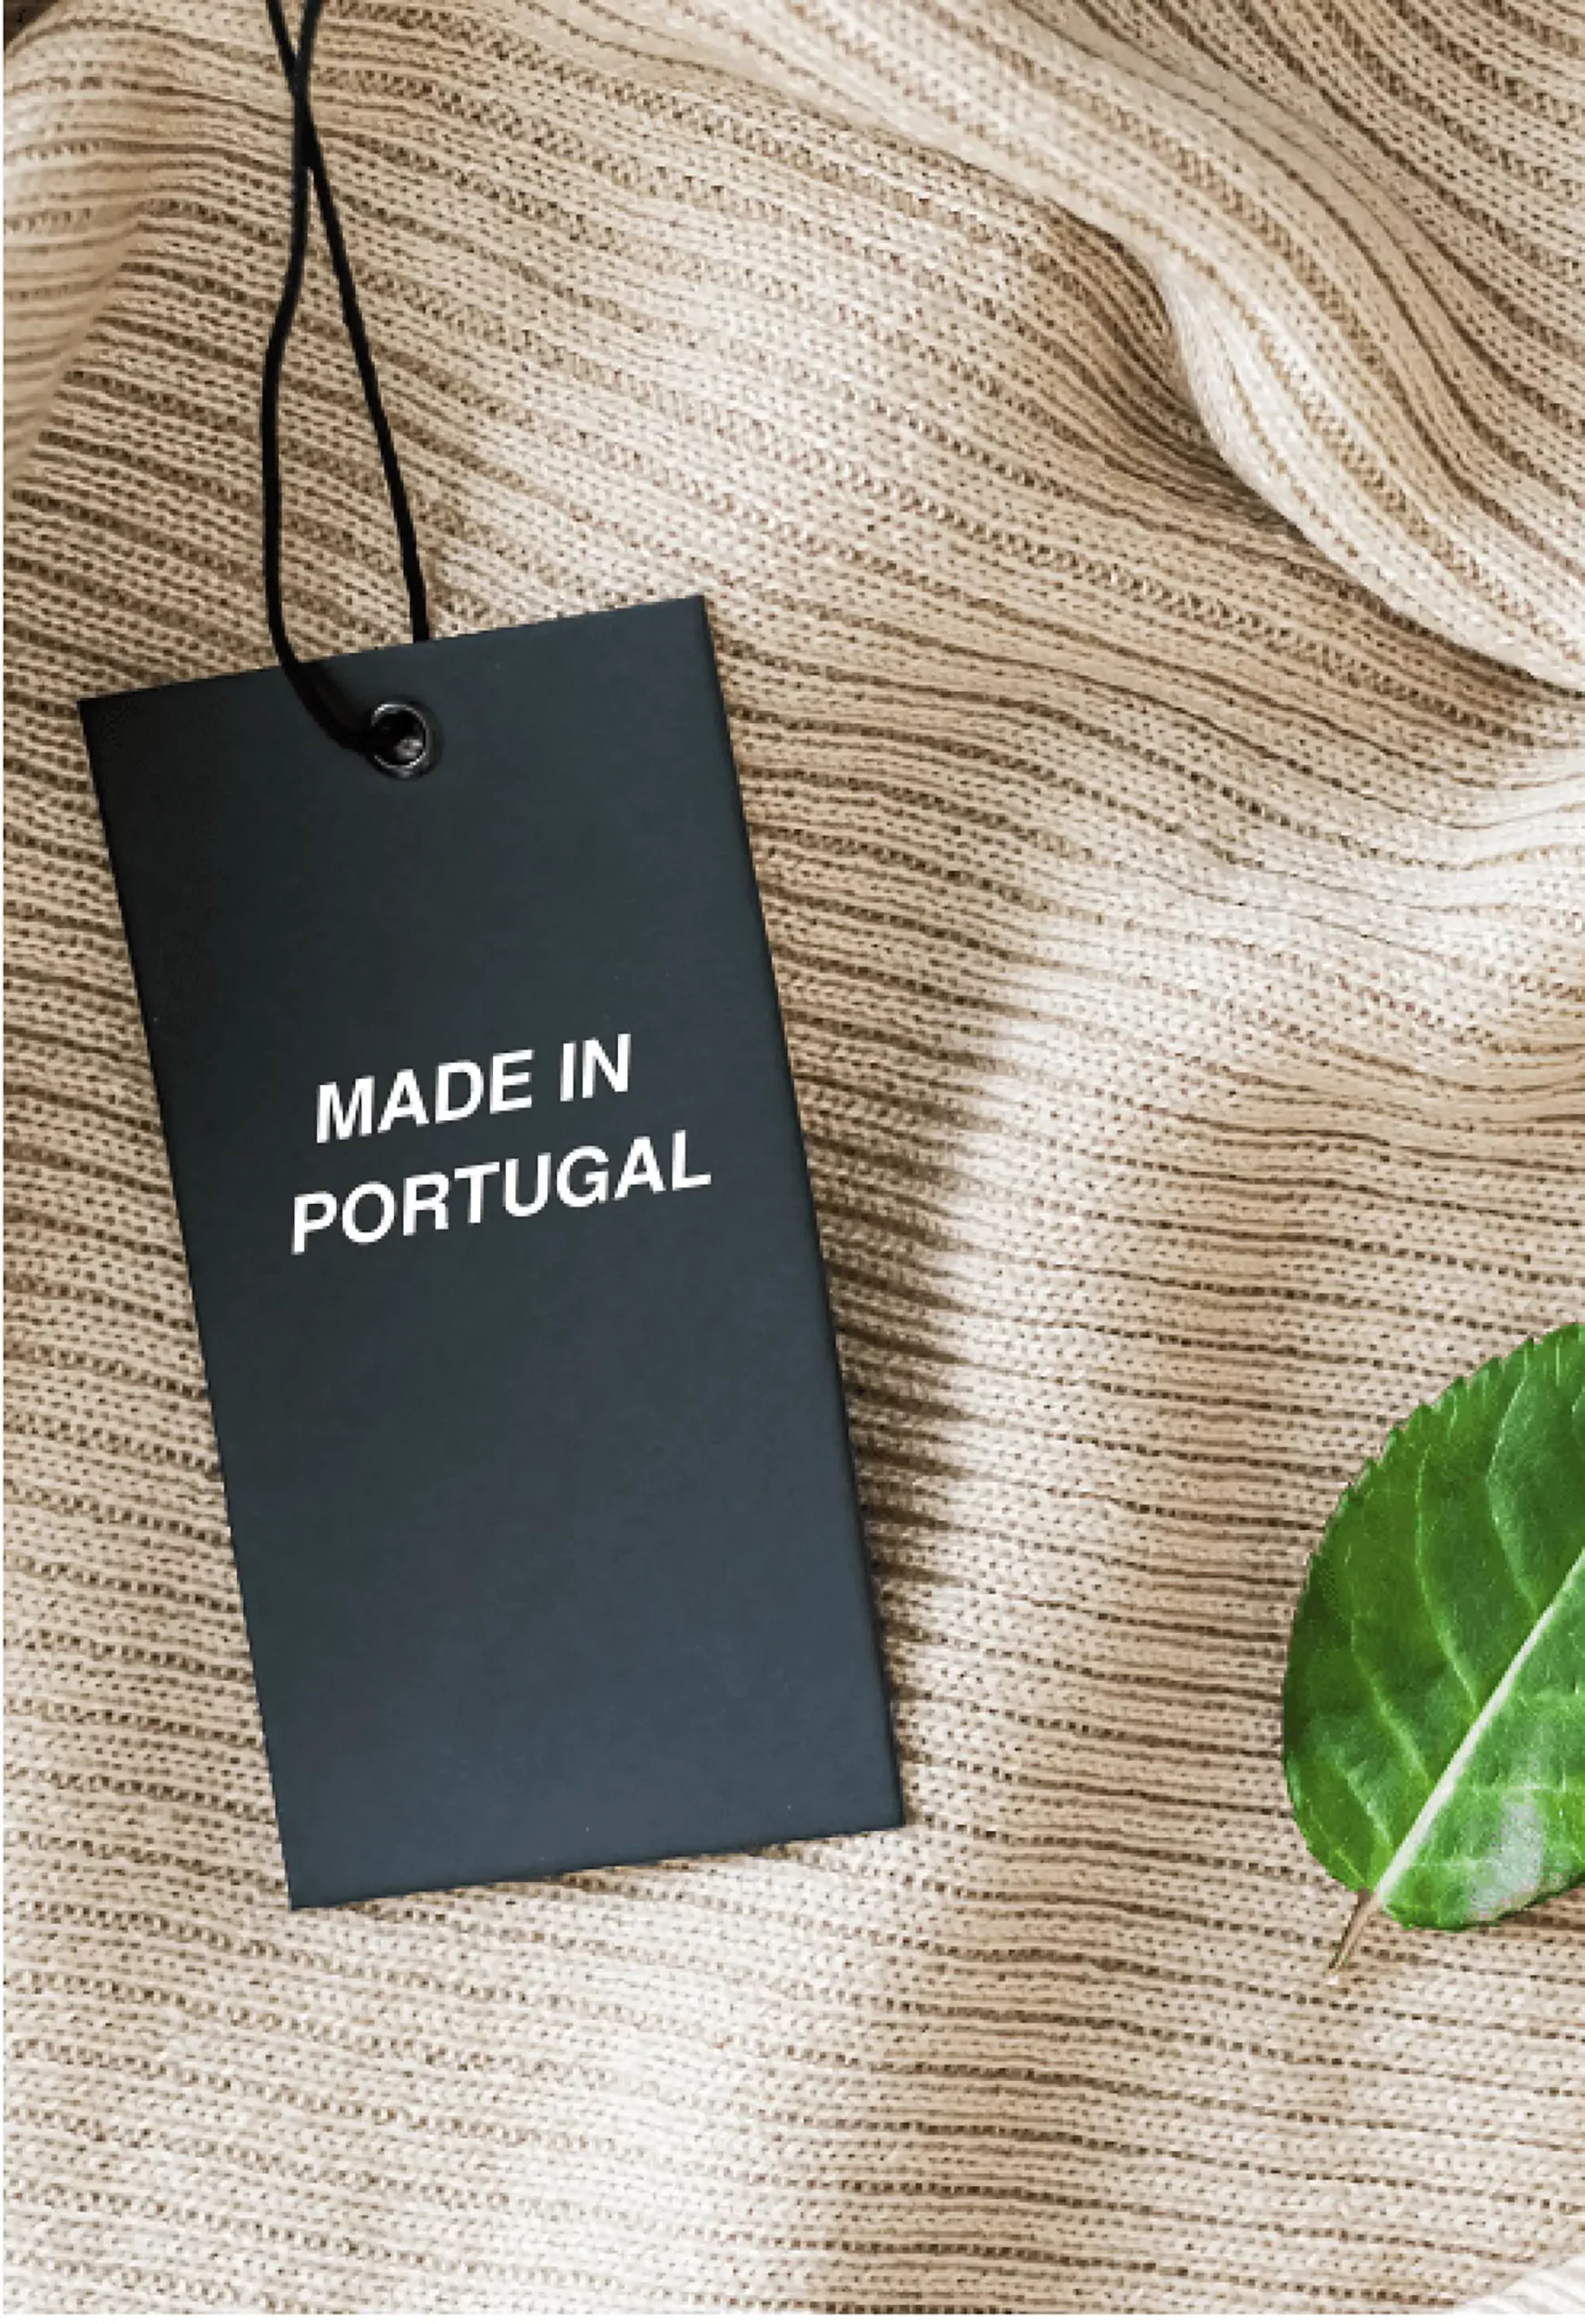 made in portugal etiquette